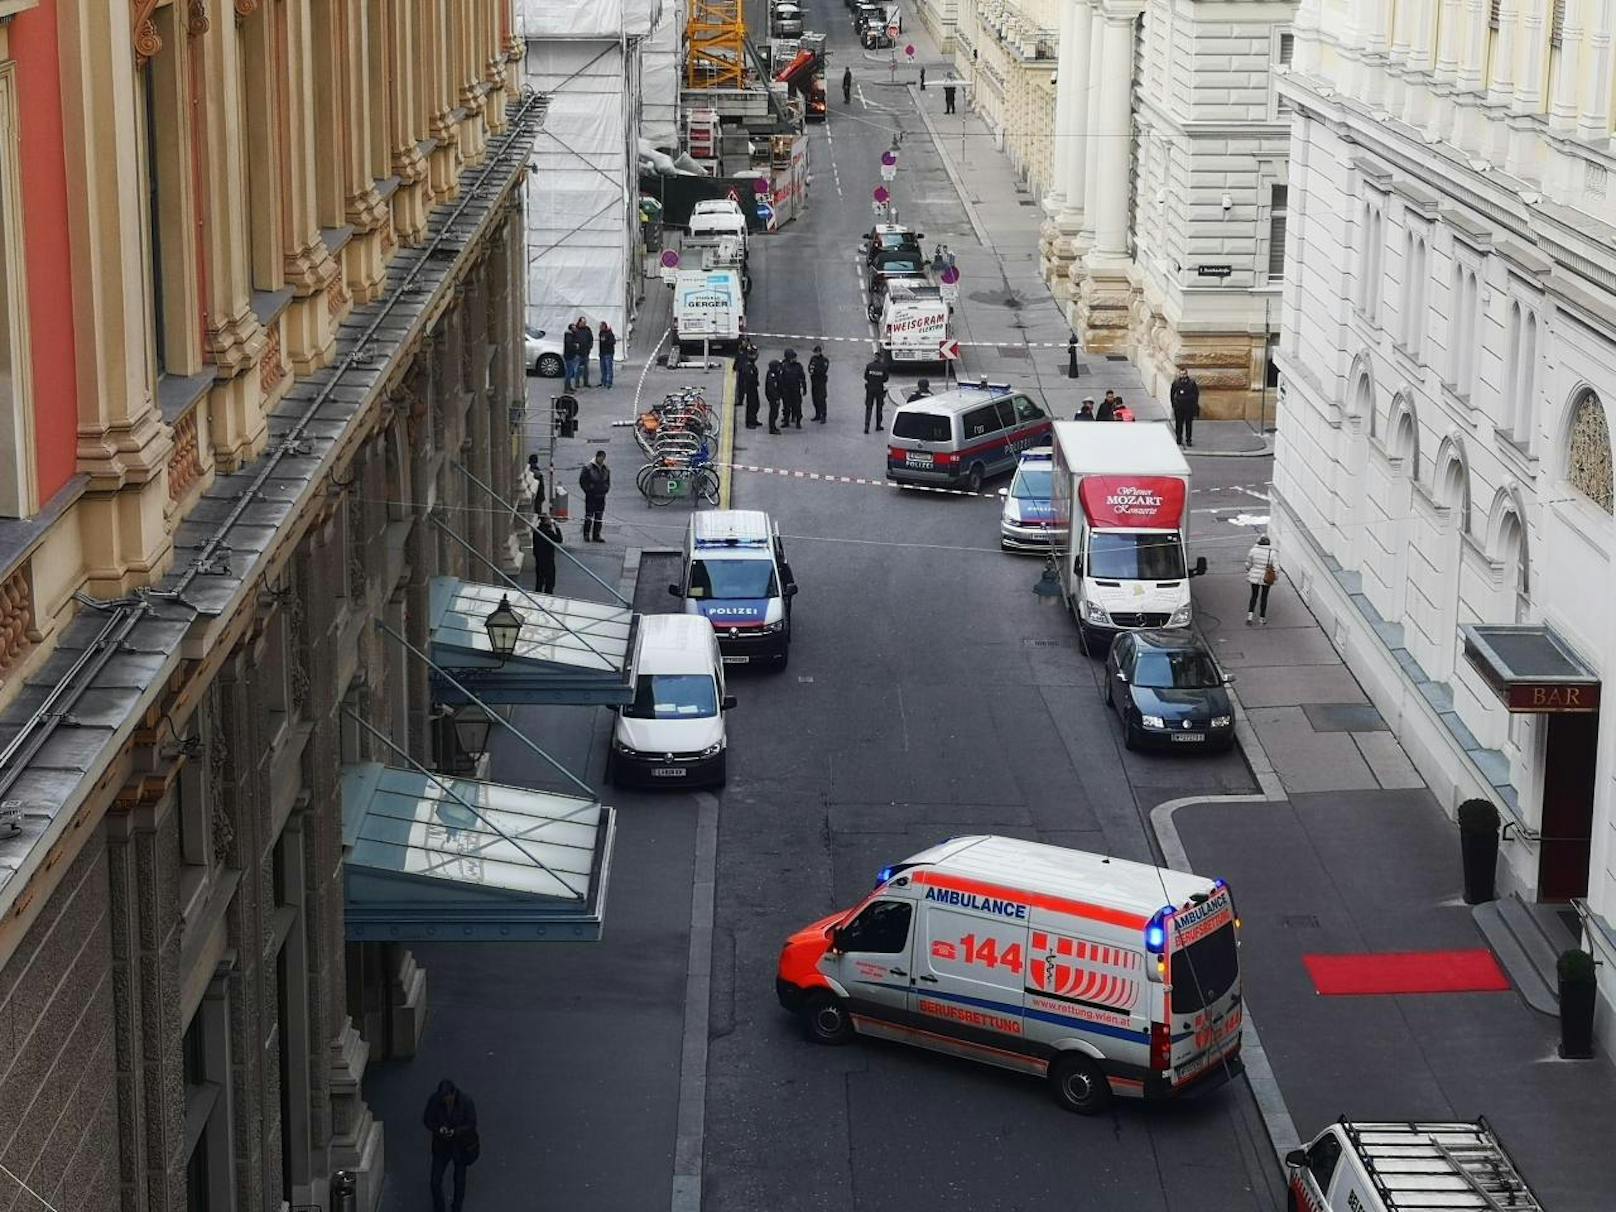 In der Wiener Innenstadt kam es zu einem Bankraub. Ein Security-Mitarbeiter wurde angeschossen und schwer verletzt. Der Täter flüchtete mit einem Fahrrad.  